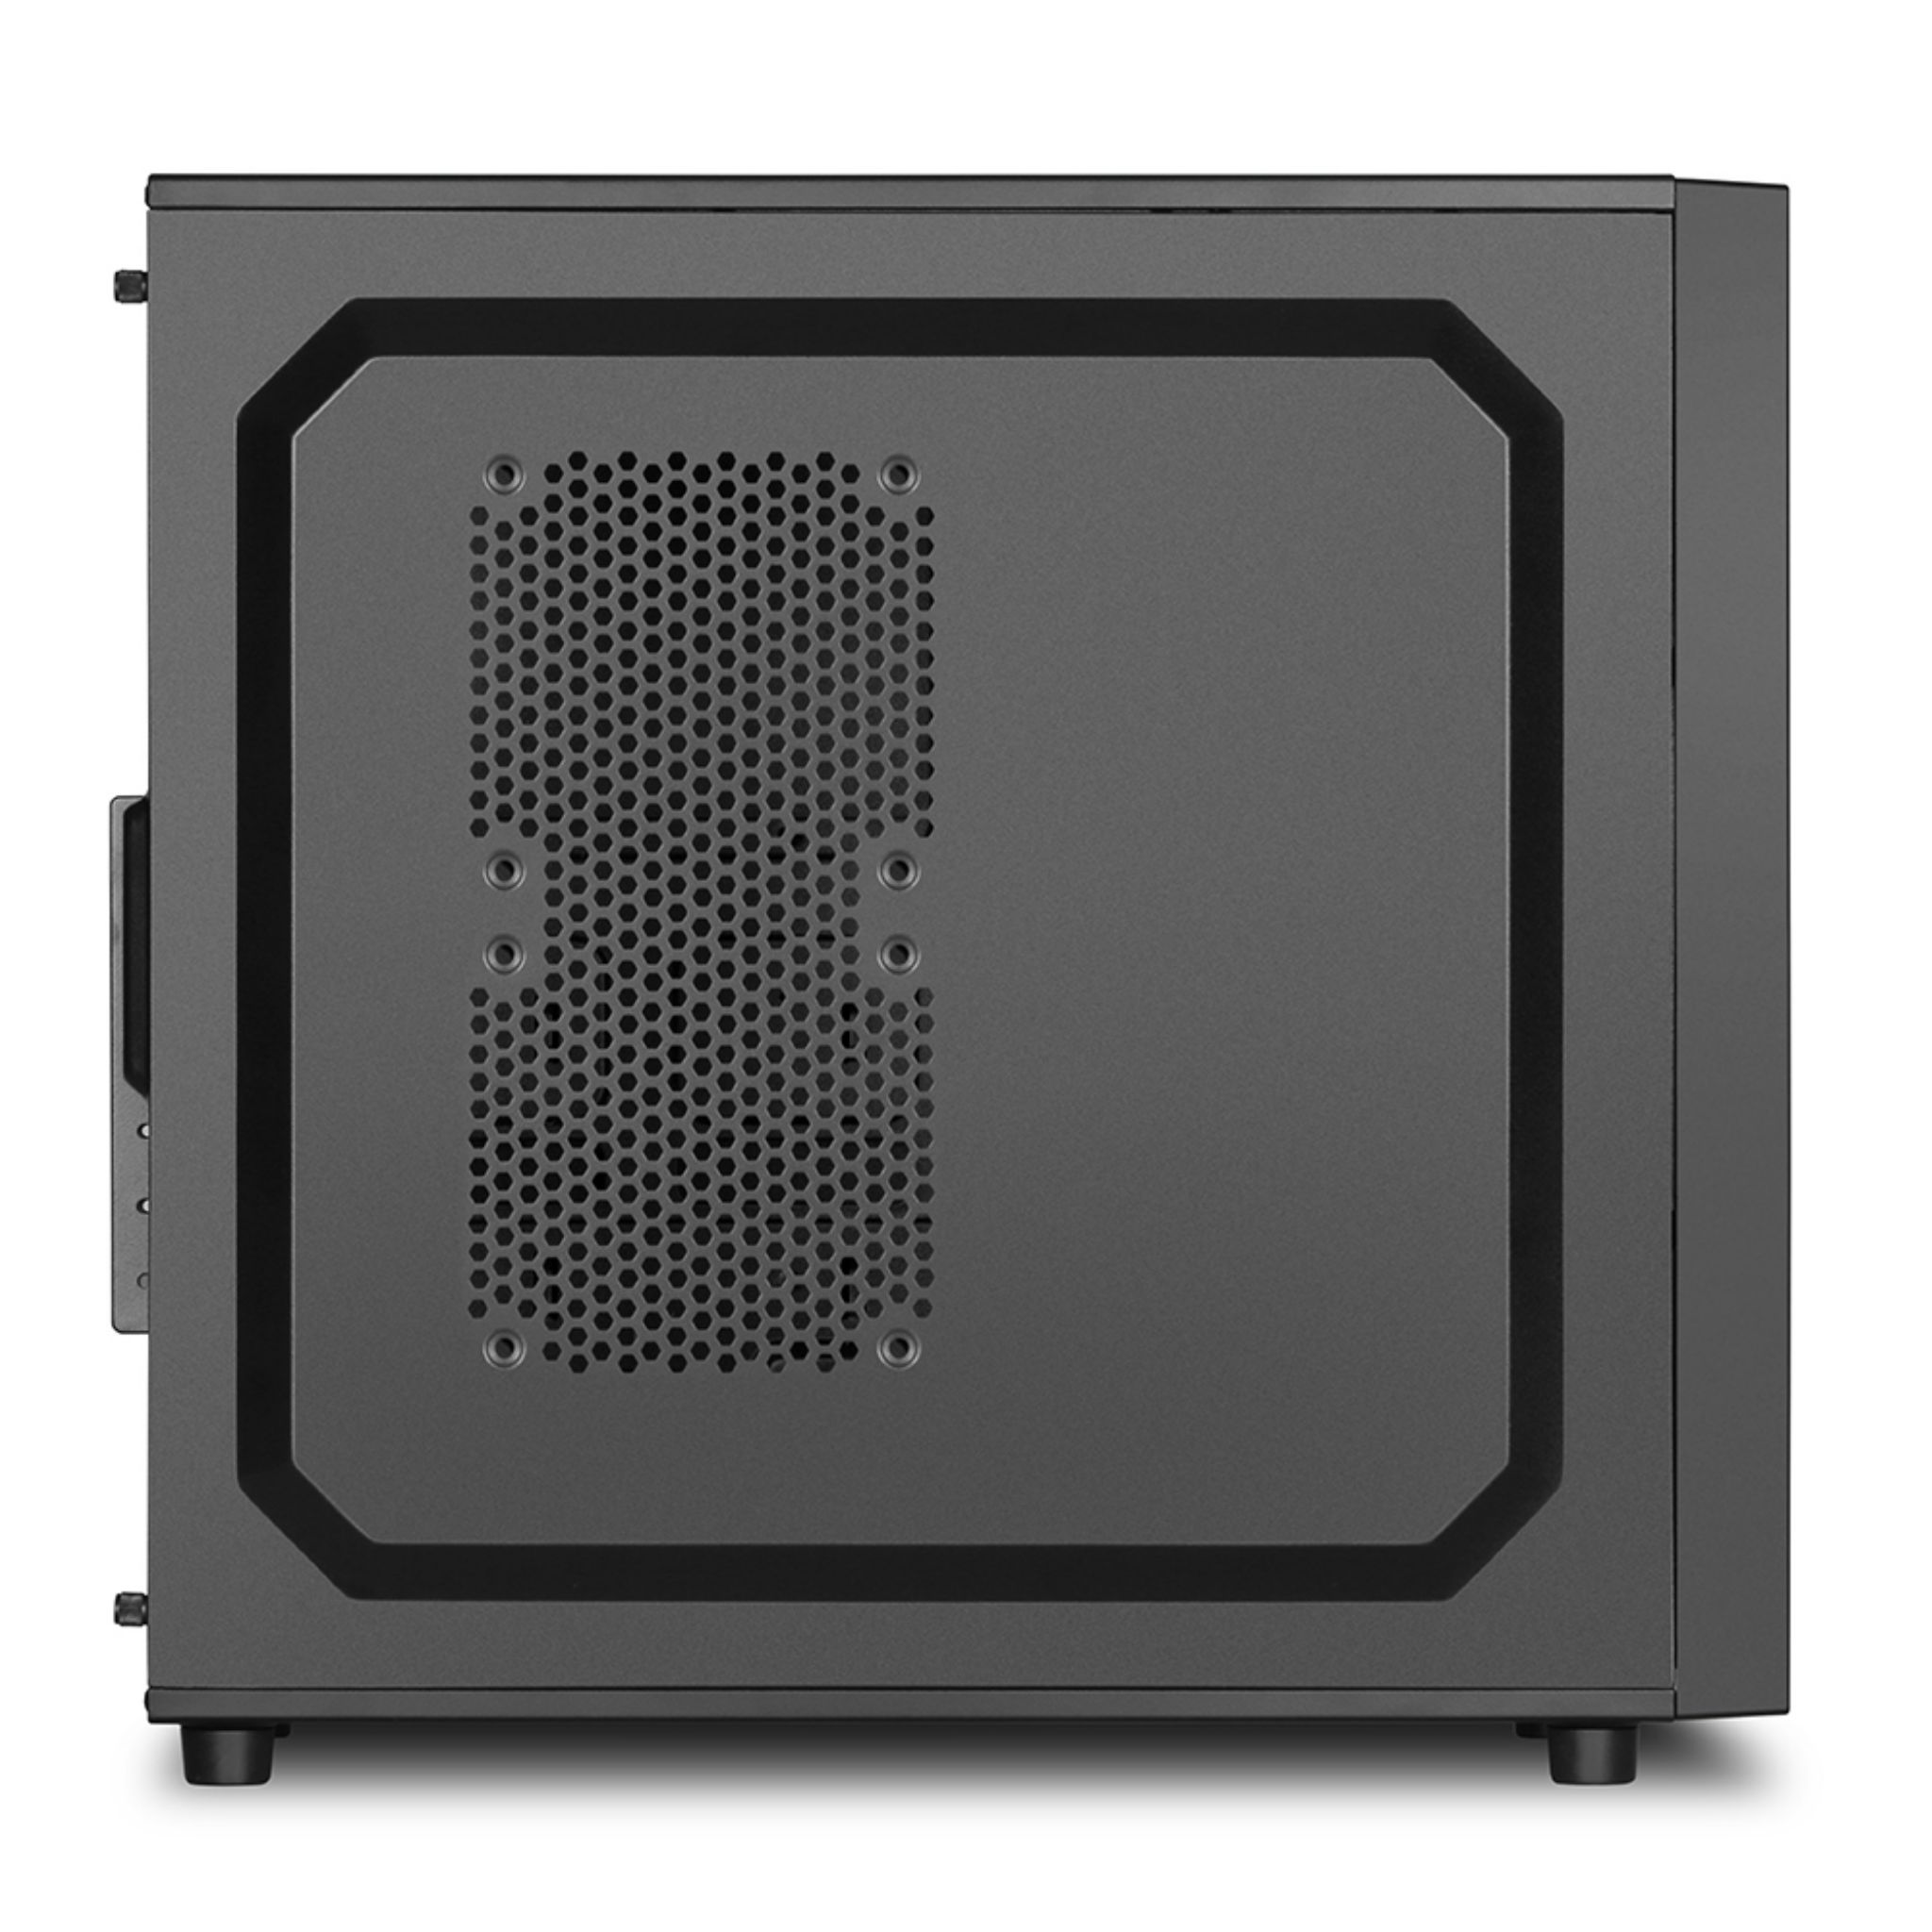 PC Gehäuse, schwarz VS4-V SHARKOON